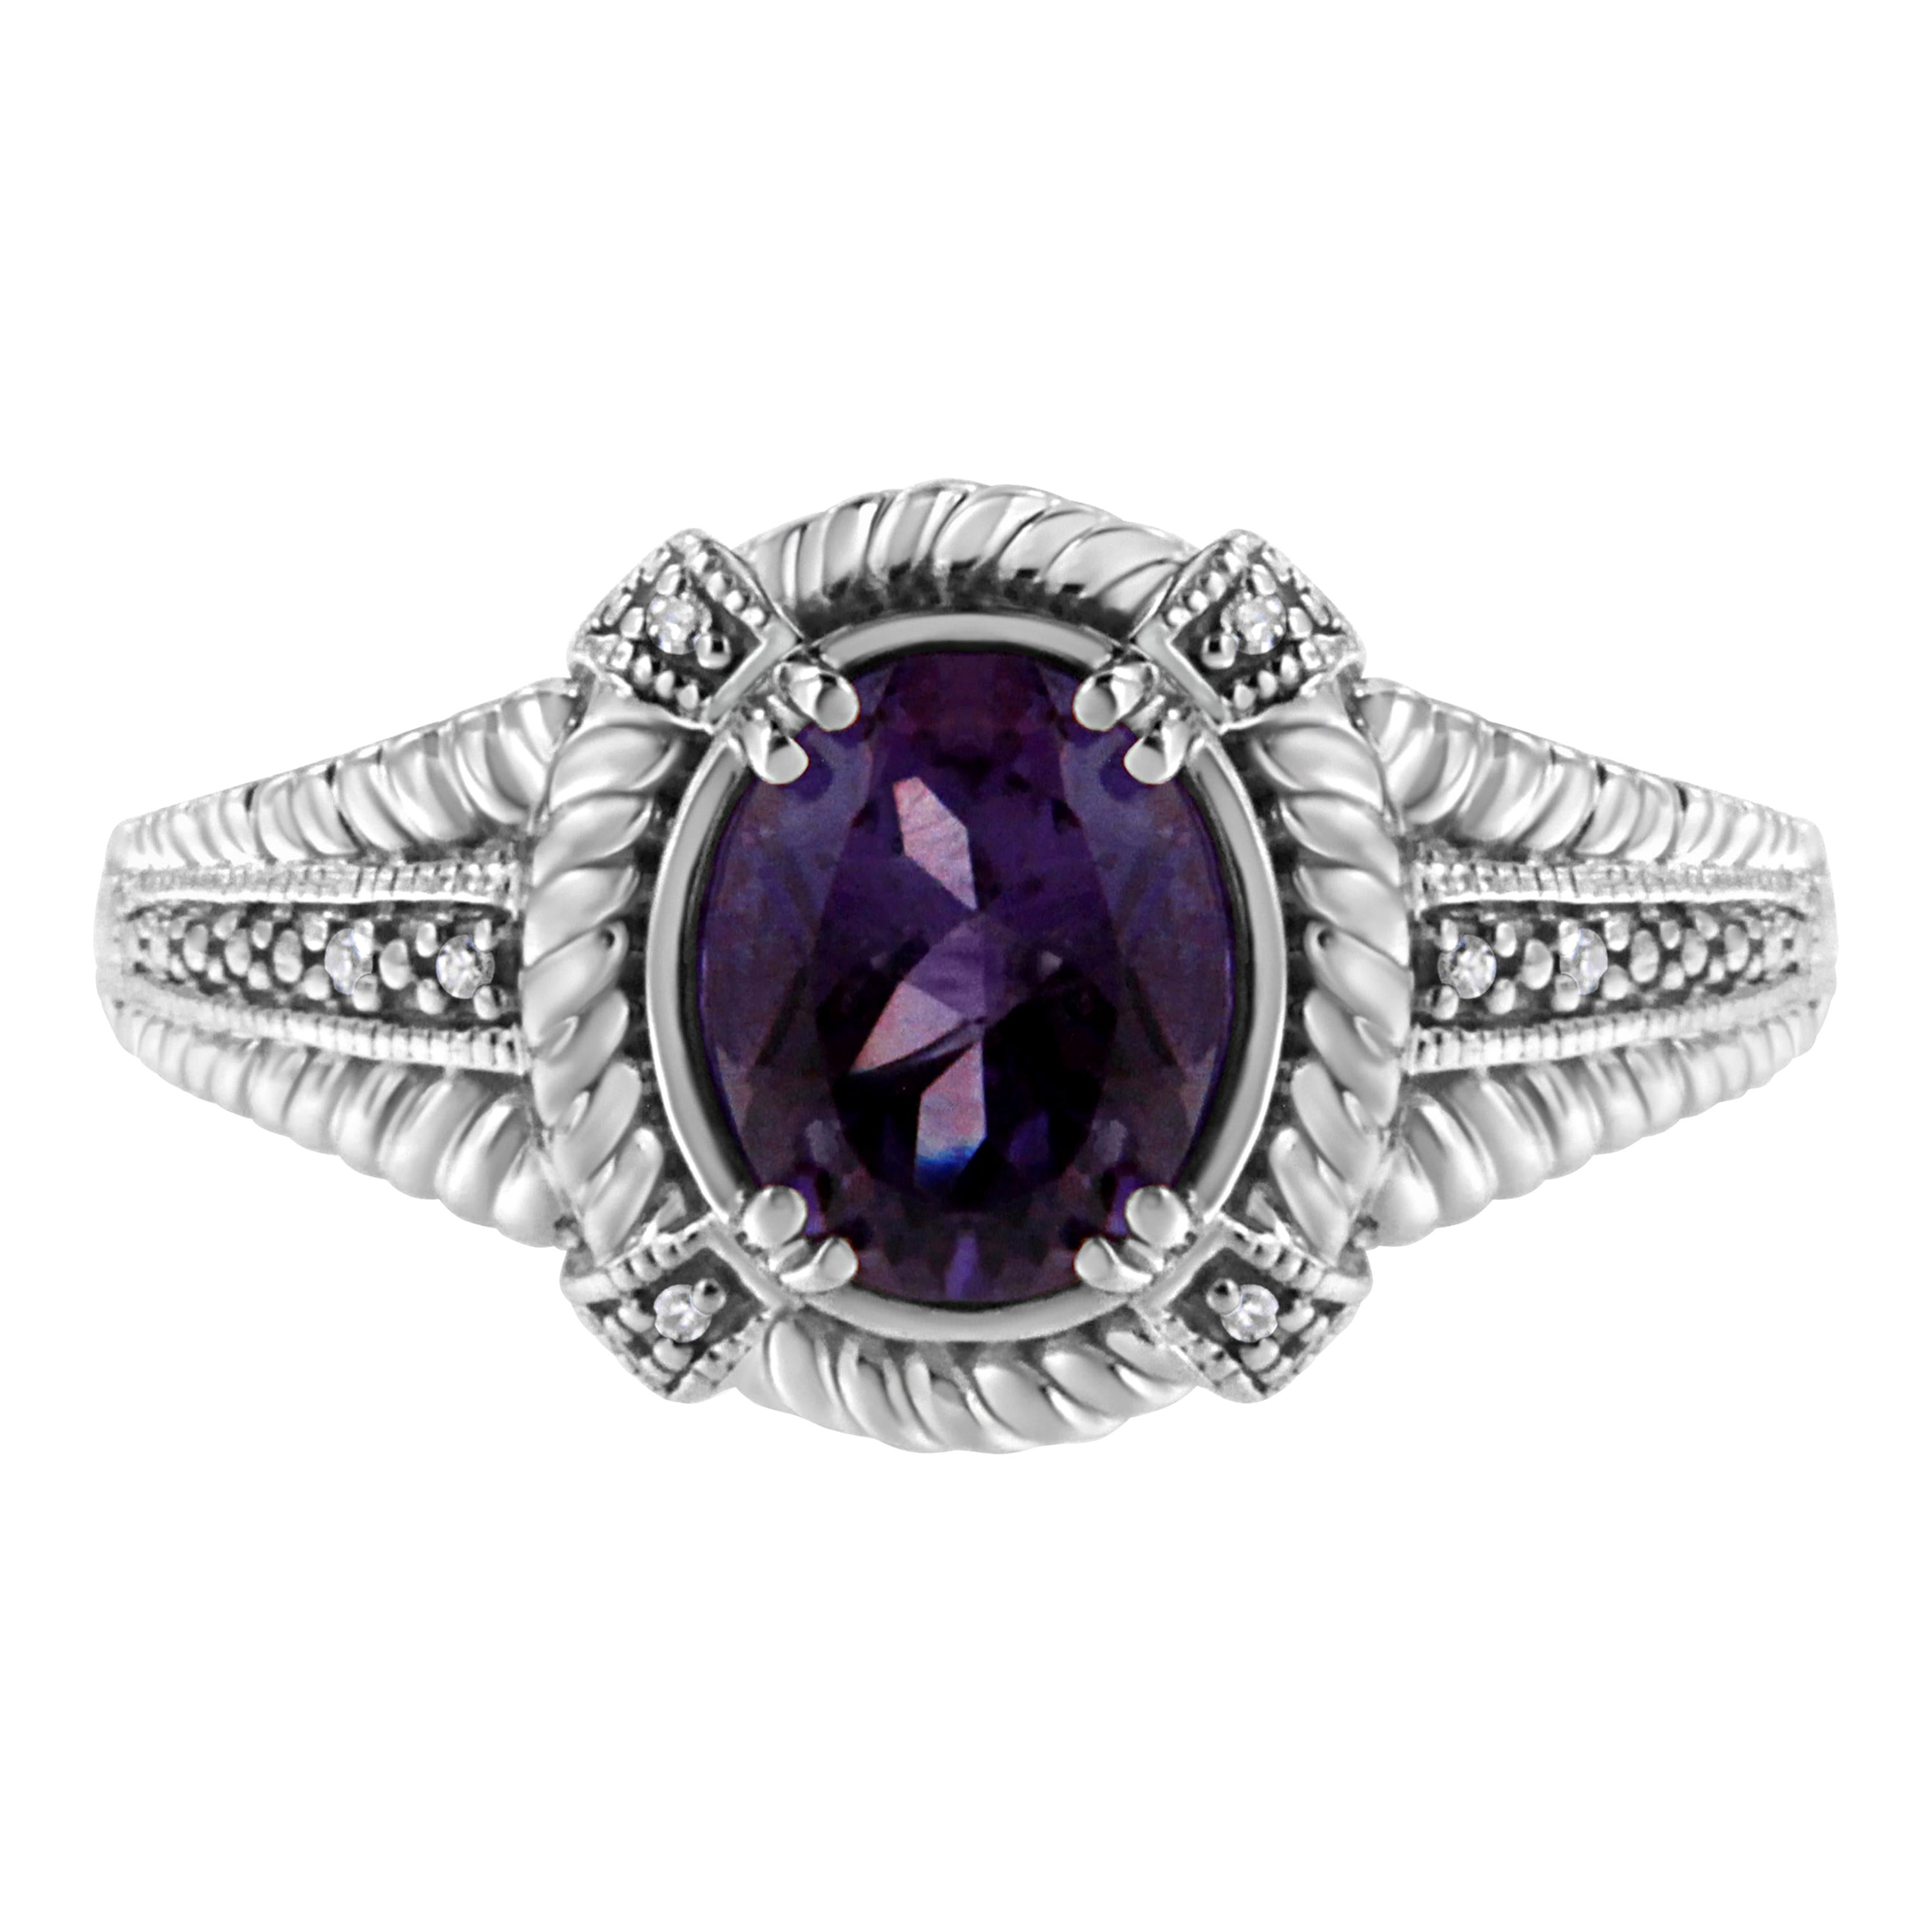 Solitaire en argent sterling de forme ovale avec améthyste violette et diamants